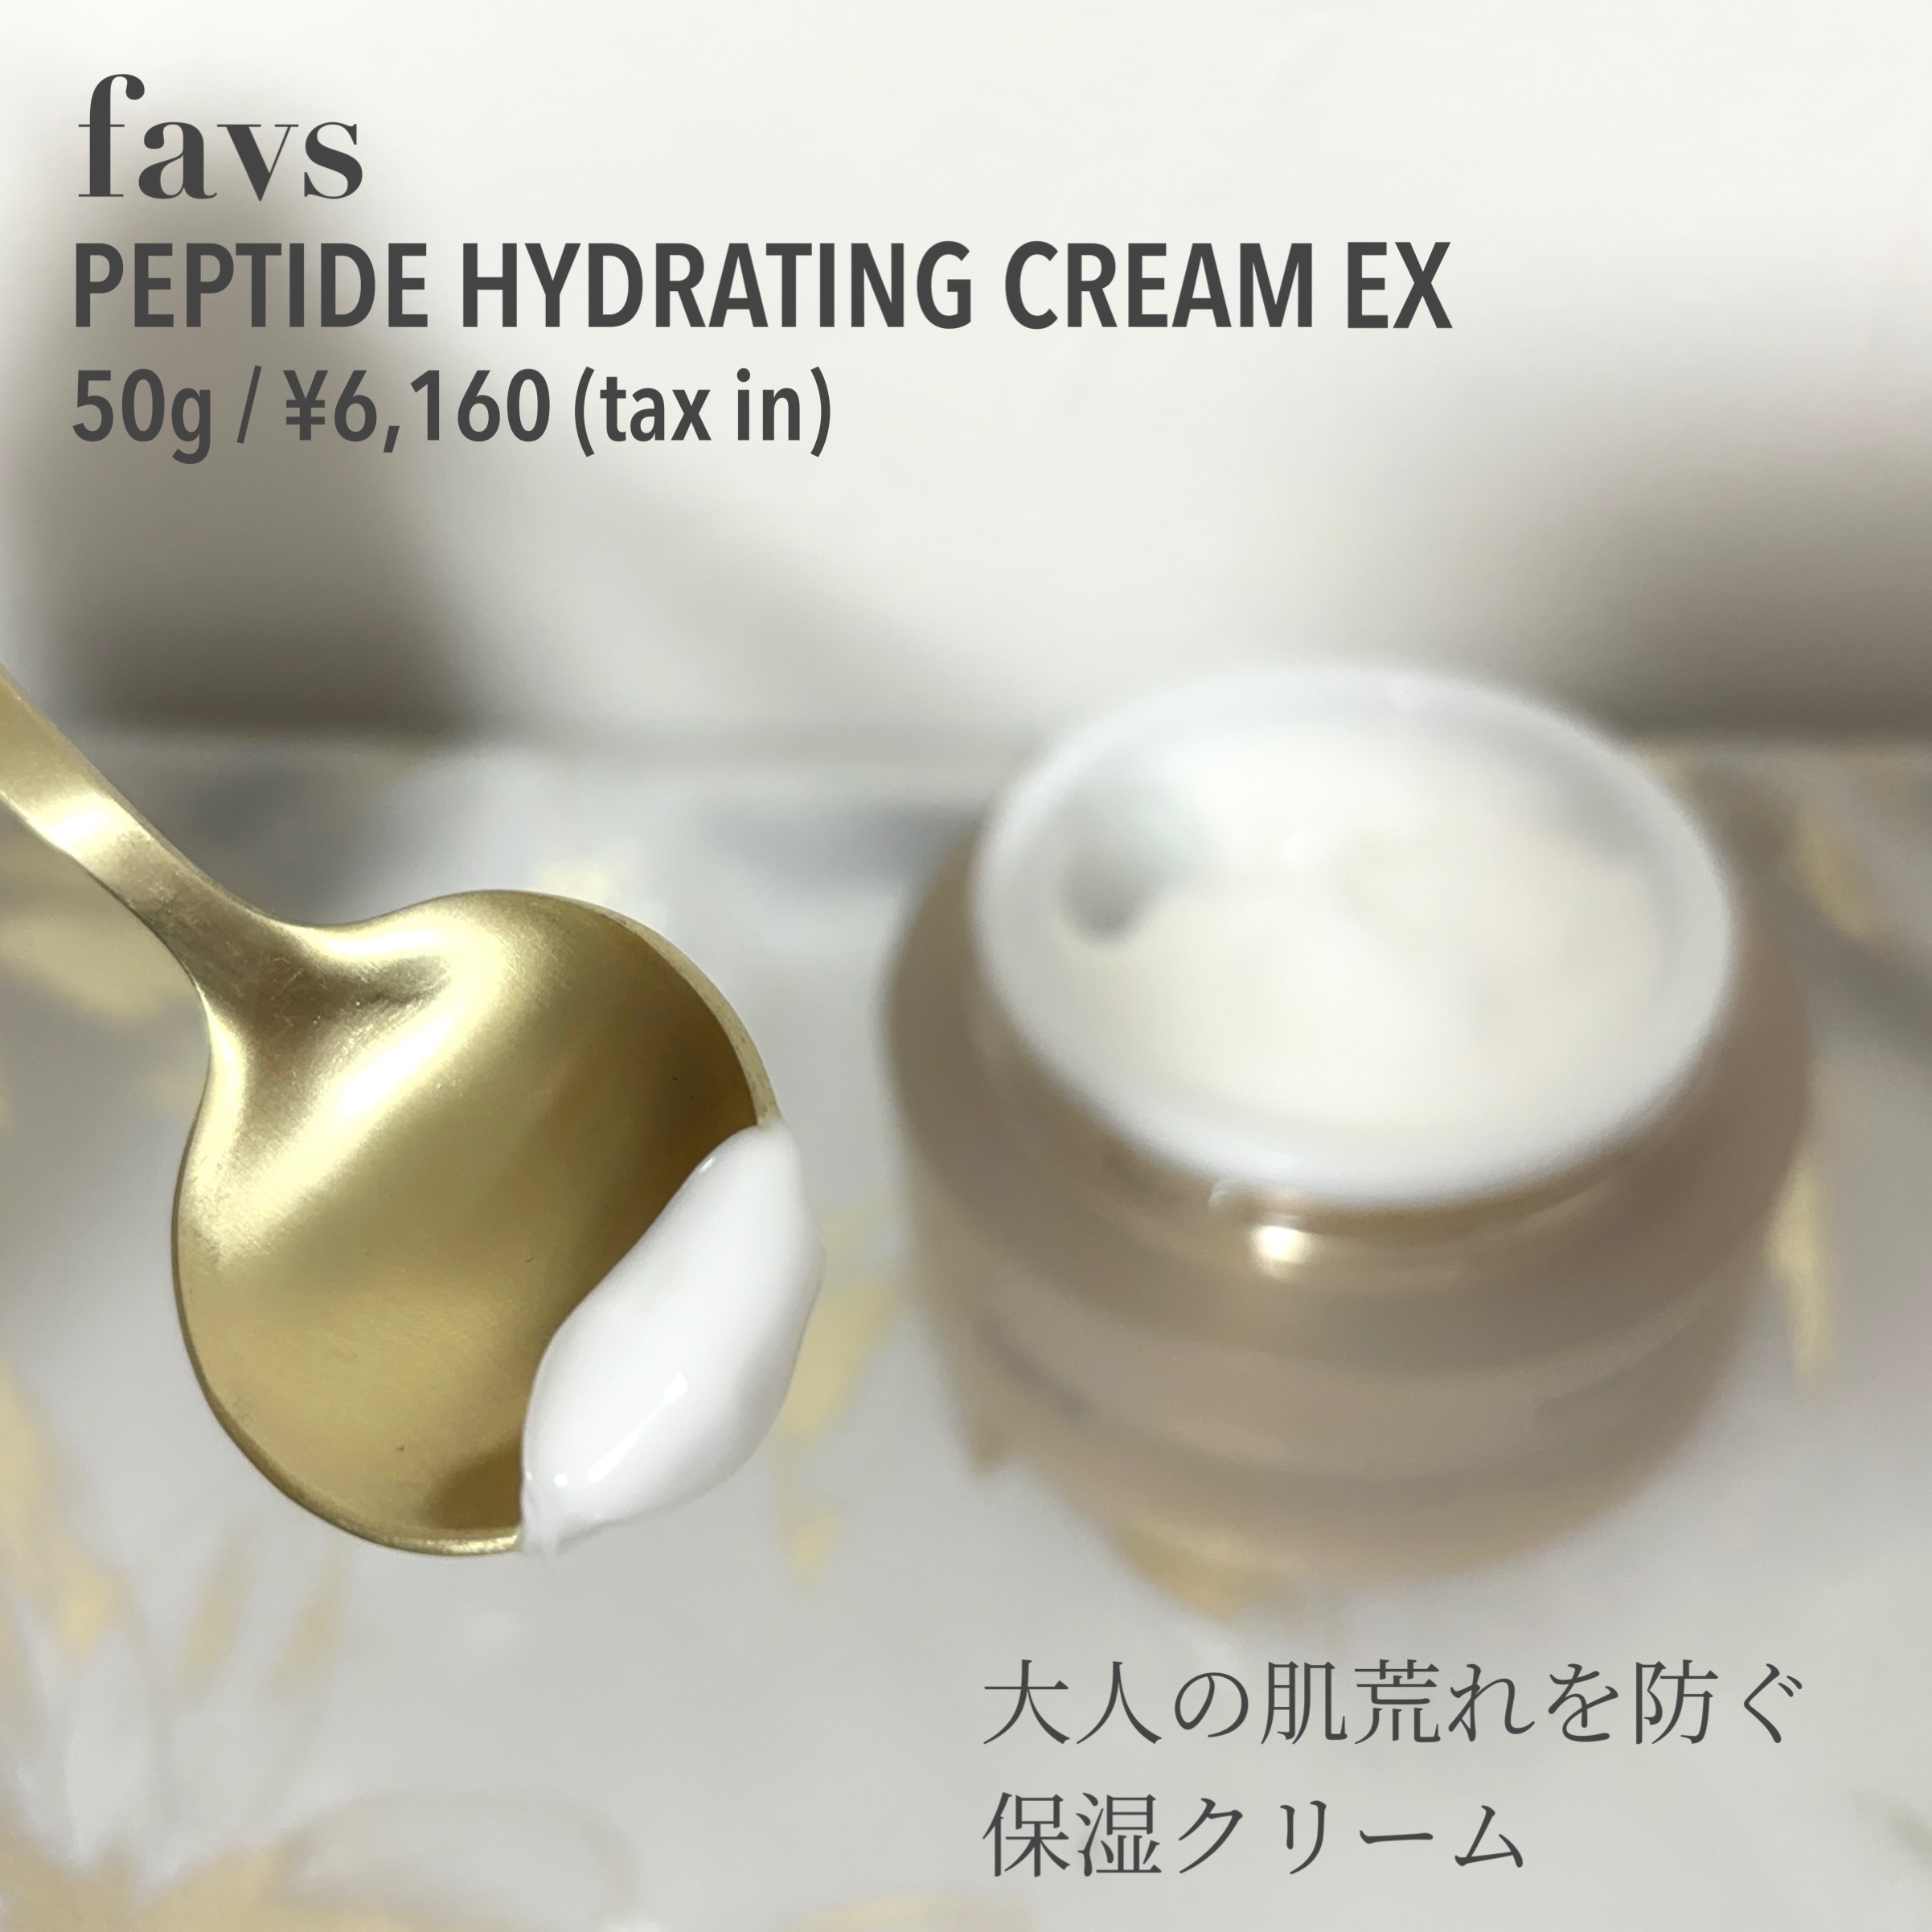 favs peptide hydration cream EXを使ったもいさんのクチコミ画像2